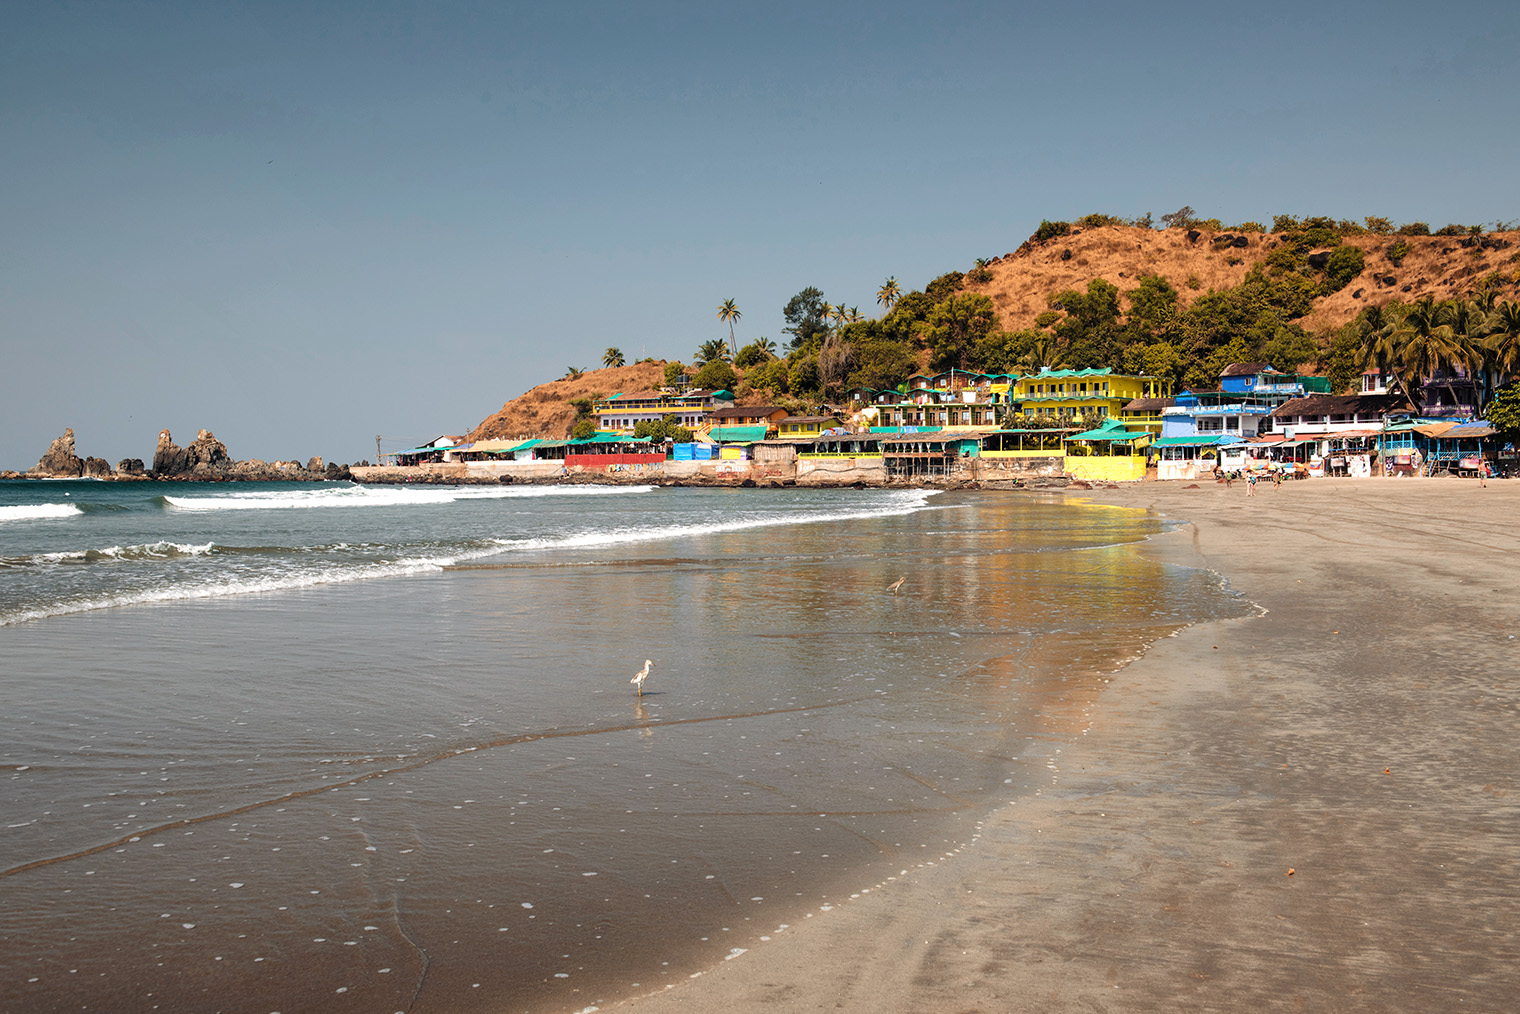 Пляж в Арамболе. Фотография: Thirteen / Shutterstock / FOTODOM